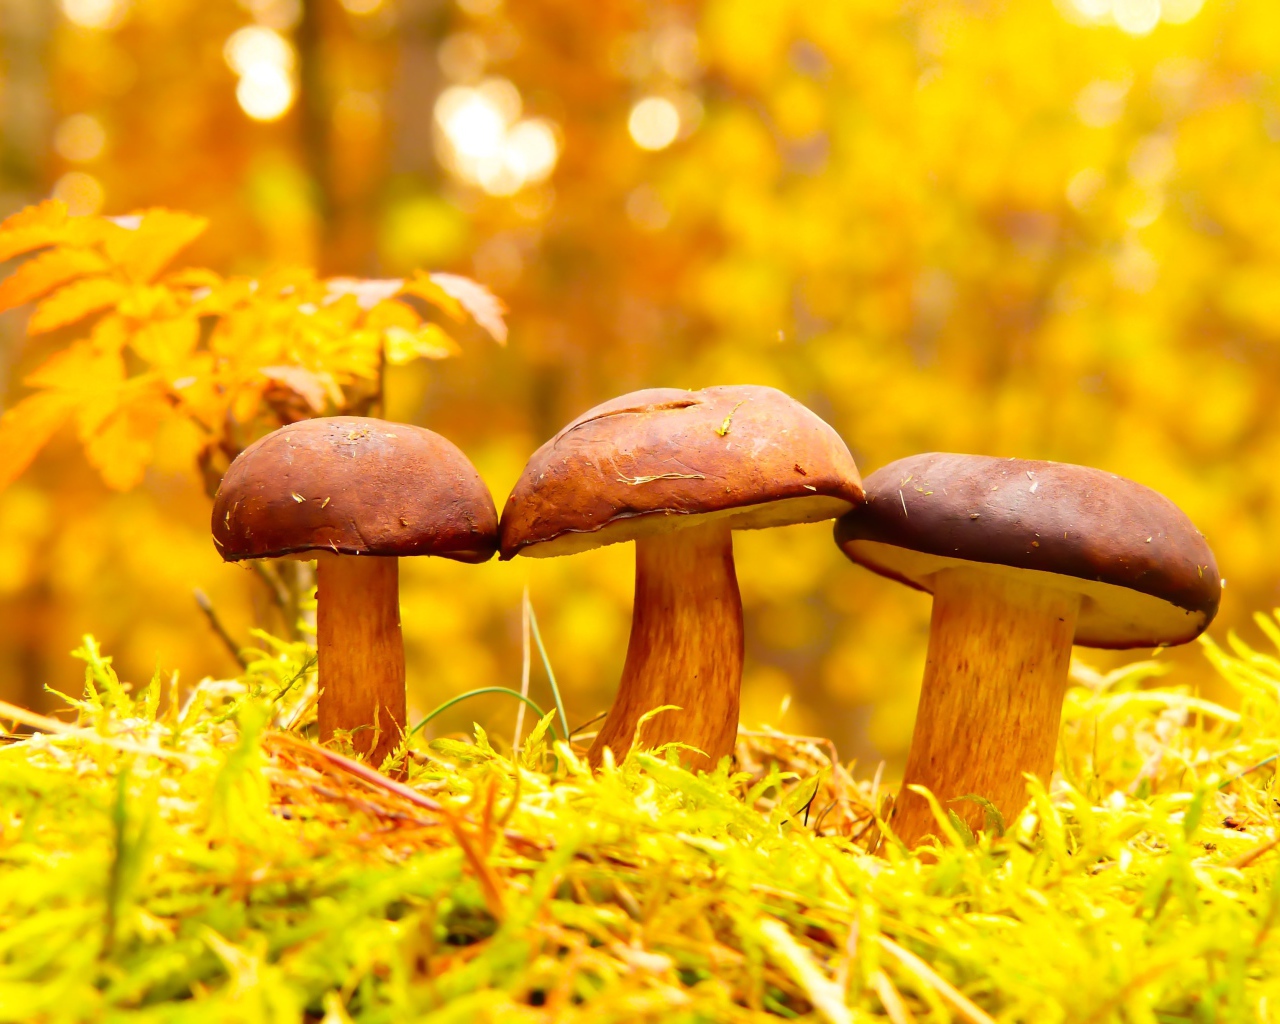 Три гриба в осеннем лесу 